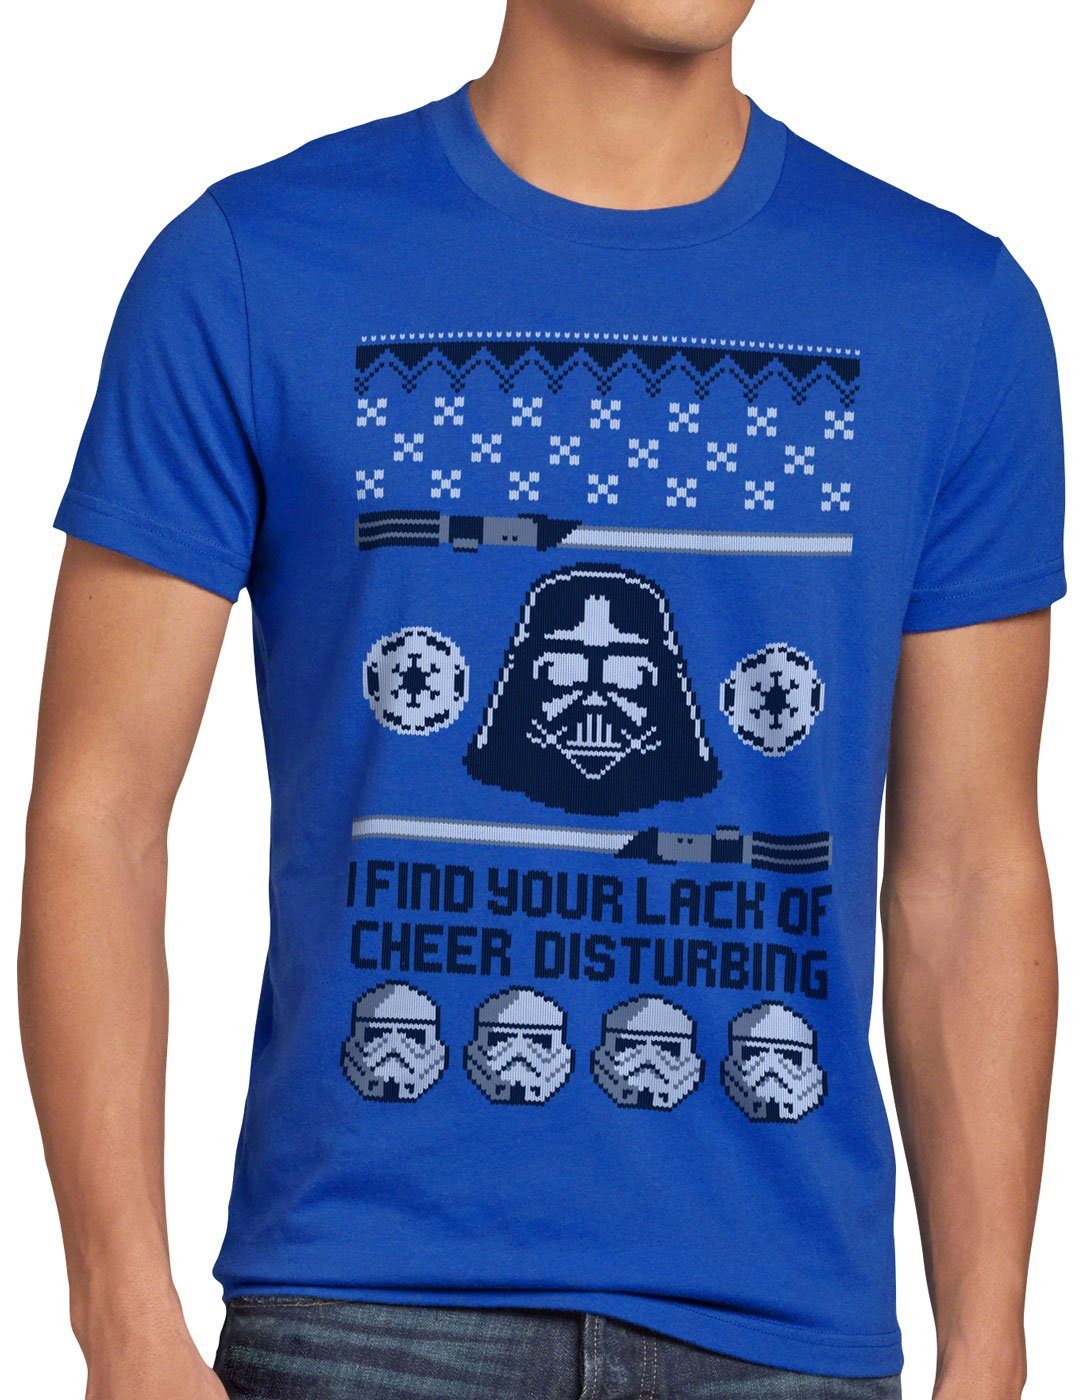 style3 Print-Shirt Herren pulli lichtschwert Lack Sweater vader of T-Shirt weihnachtsbaum sith Cheer x-mas blau Ugly